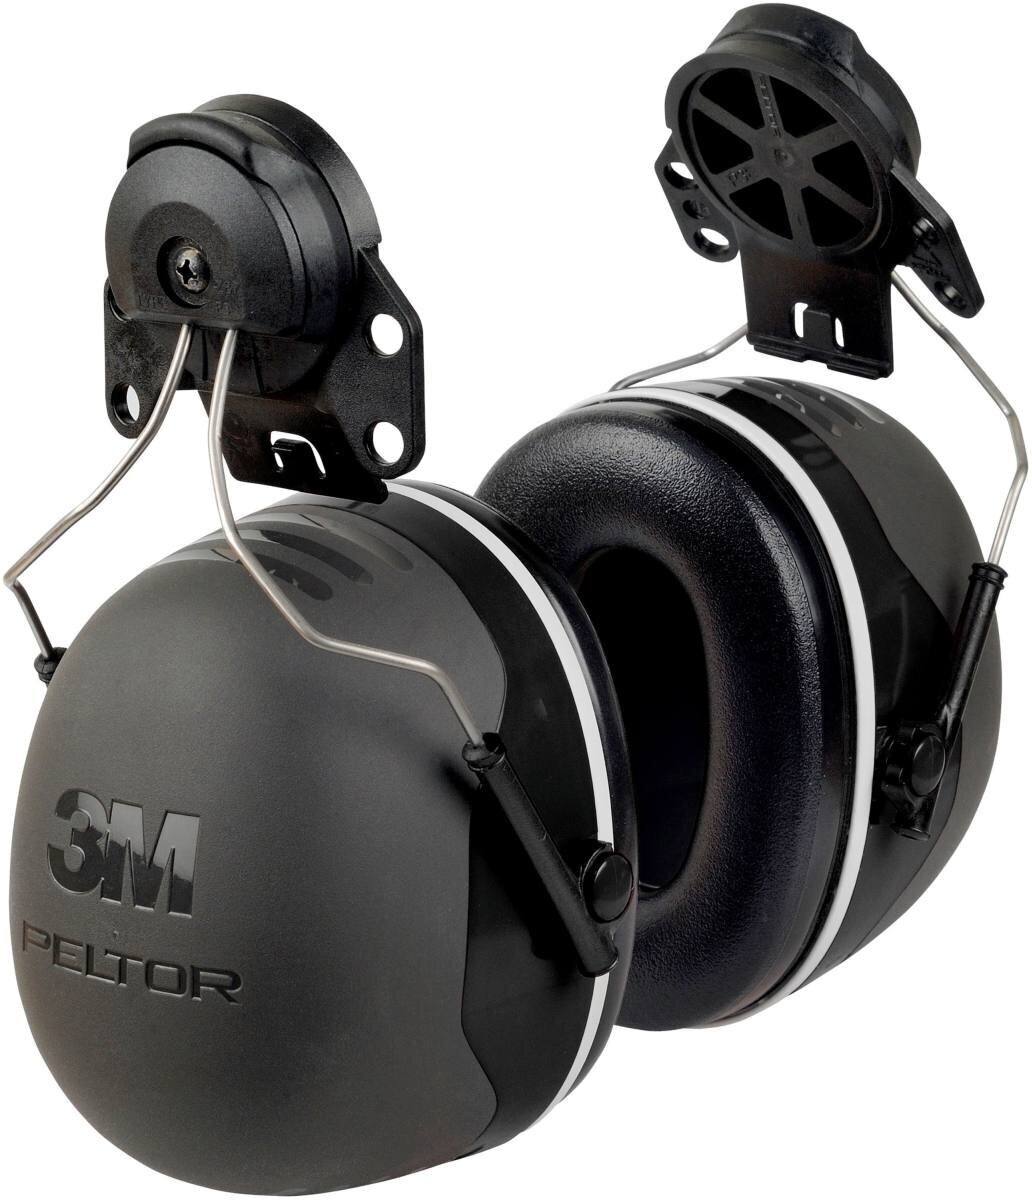 3M Peltor kuulokkeet, X5P3E kypäräkiinnitys, musta, SNR = 36 dB kypäräadapterin P3E kanssa (kaikkiin 3M kypäröihin, paitsi G2000).